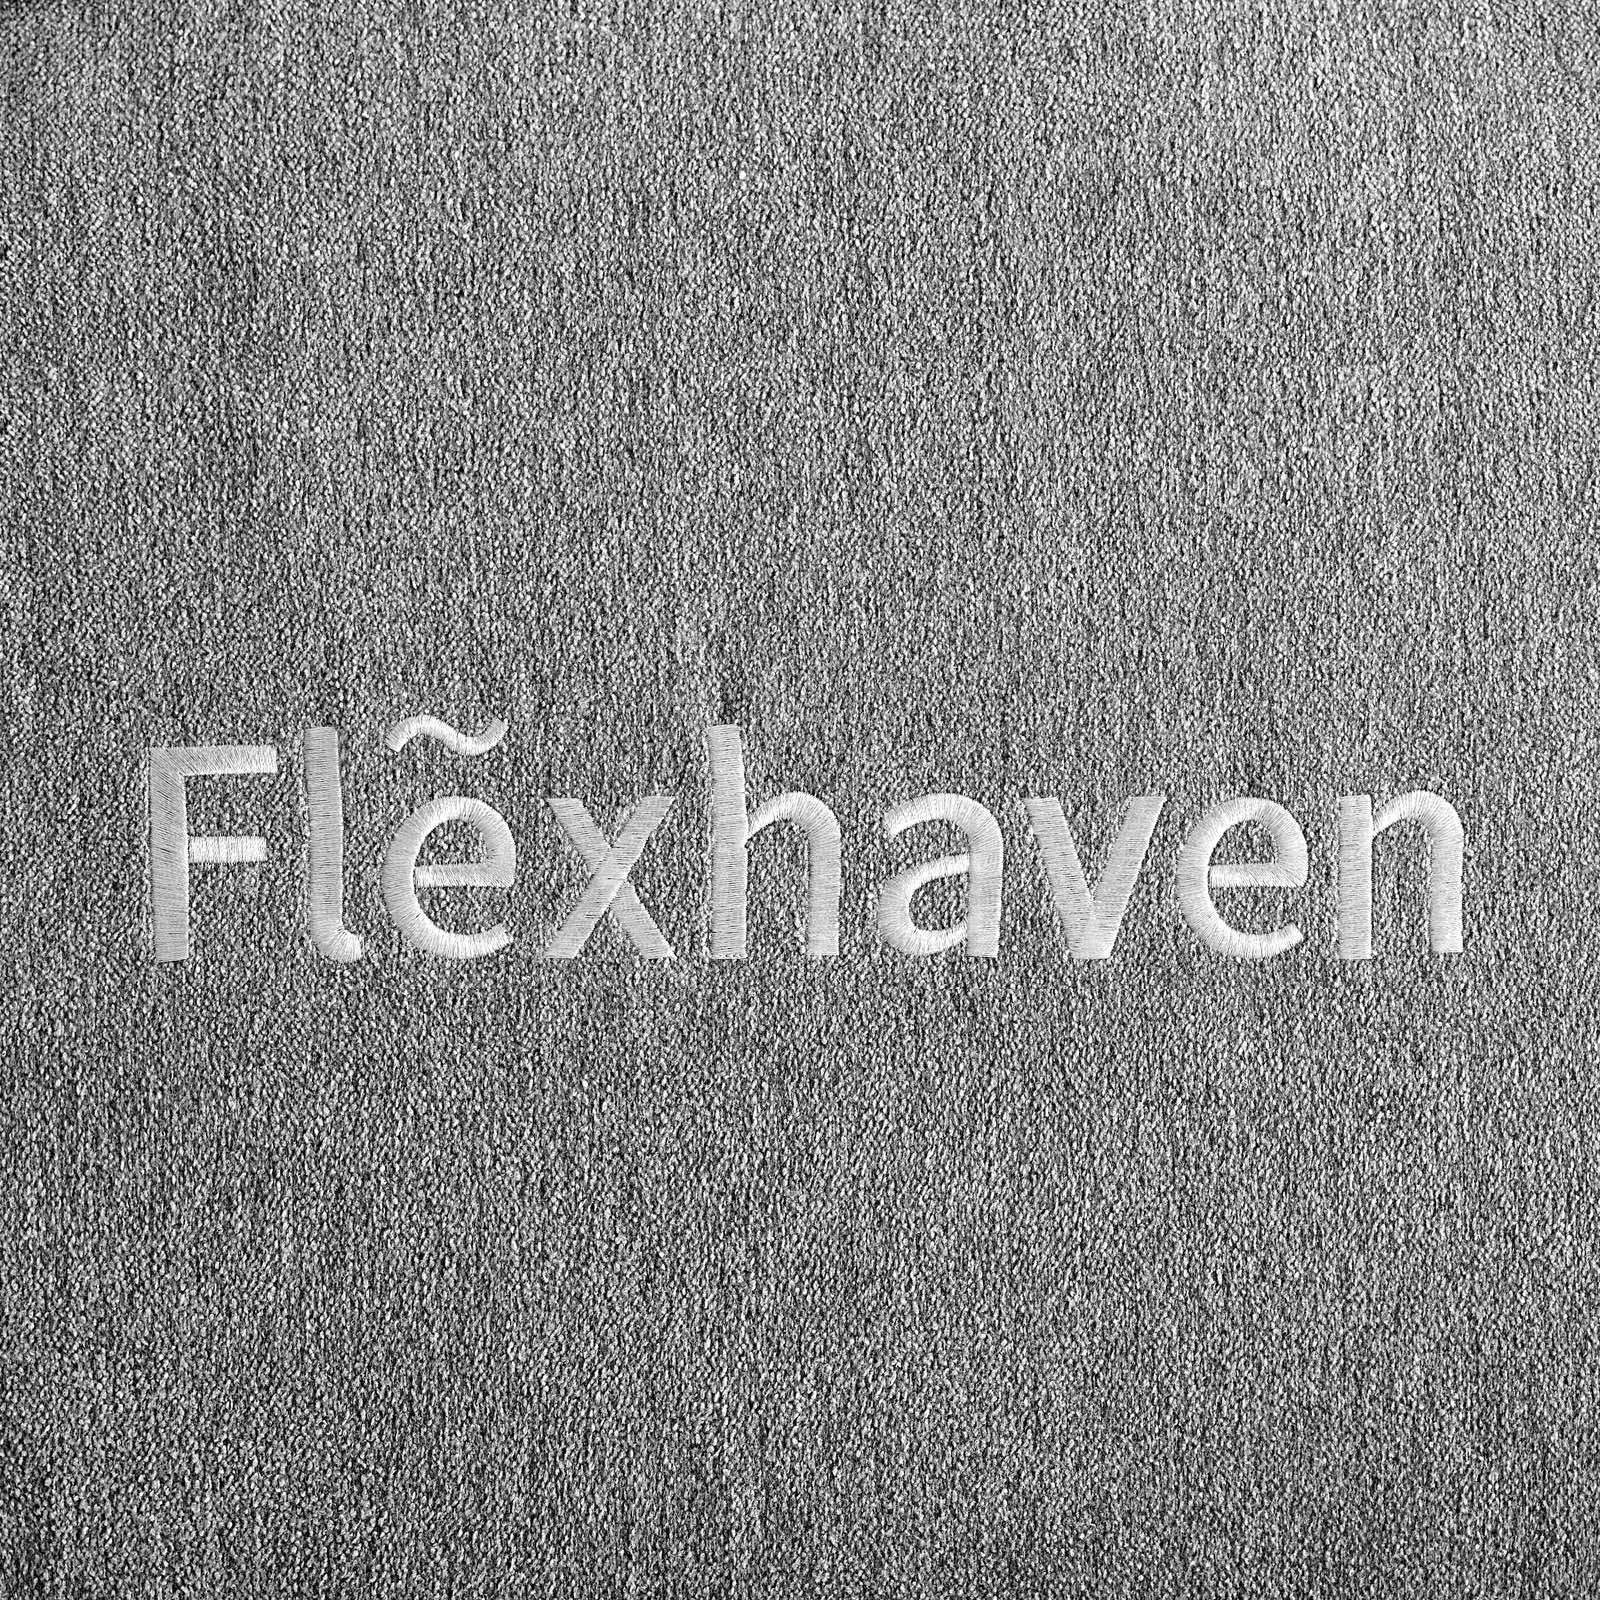 Modway Flexhaven 10" Twin Memory Mattress FredCo